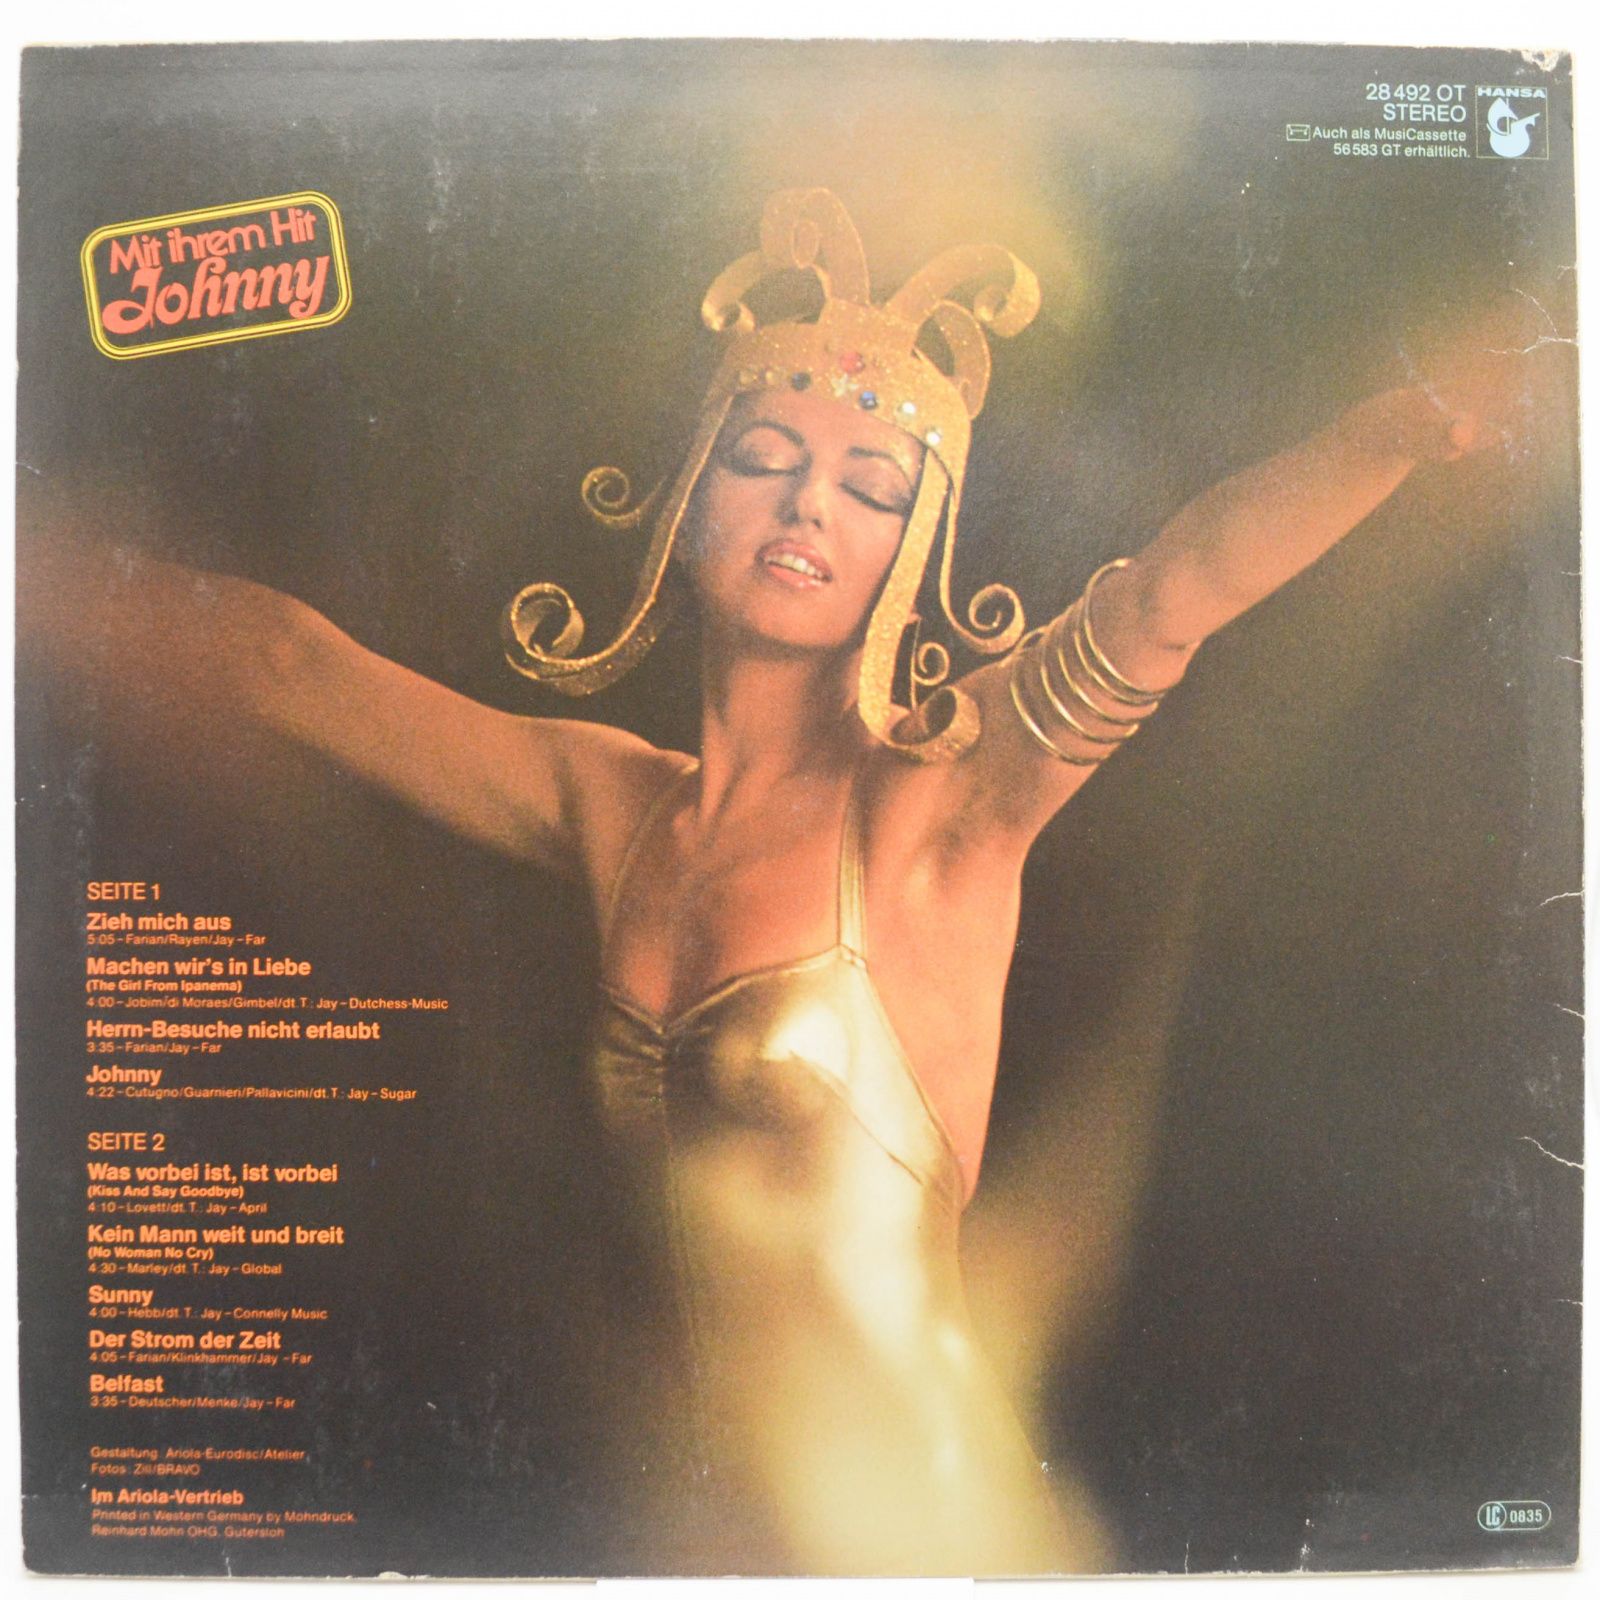 Gilla — Zieh Mich Aus, 1977